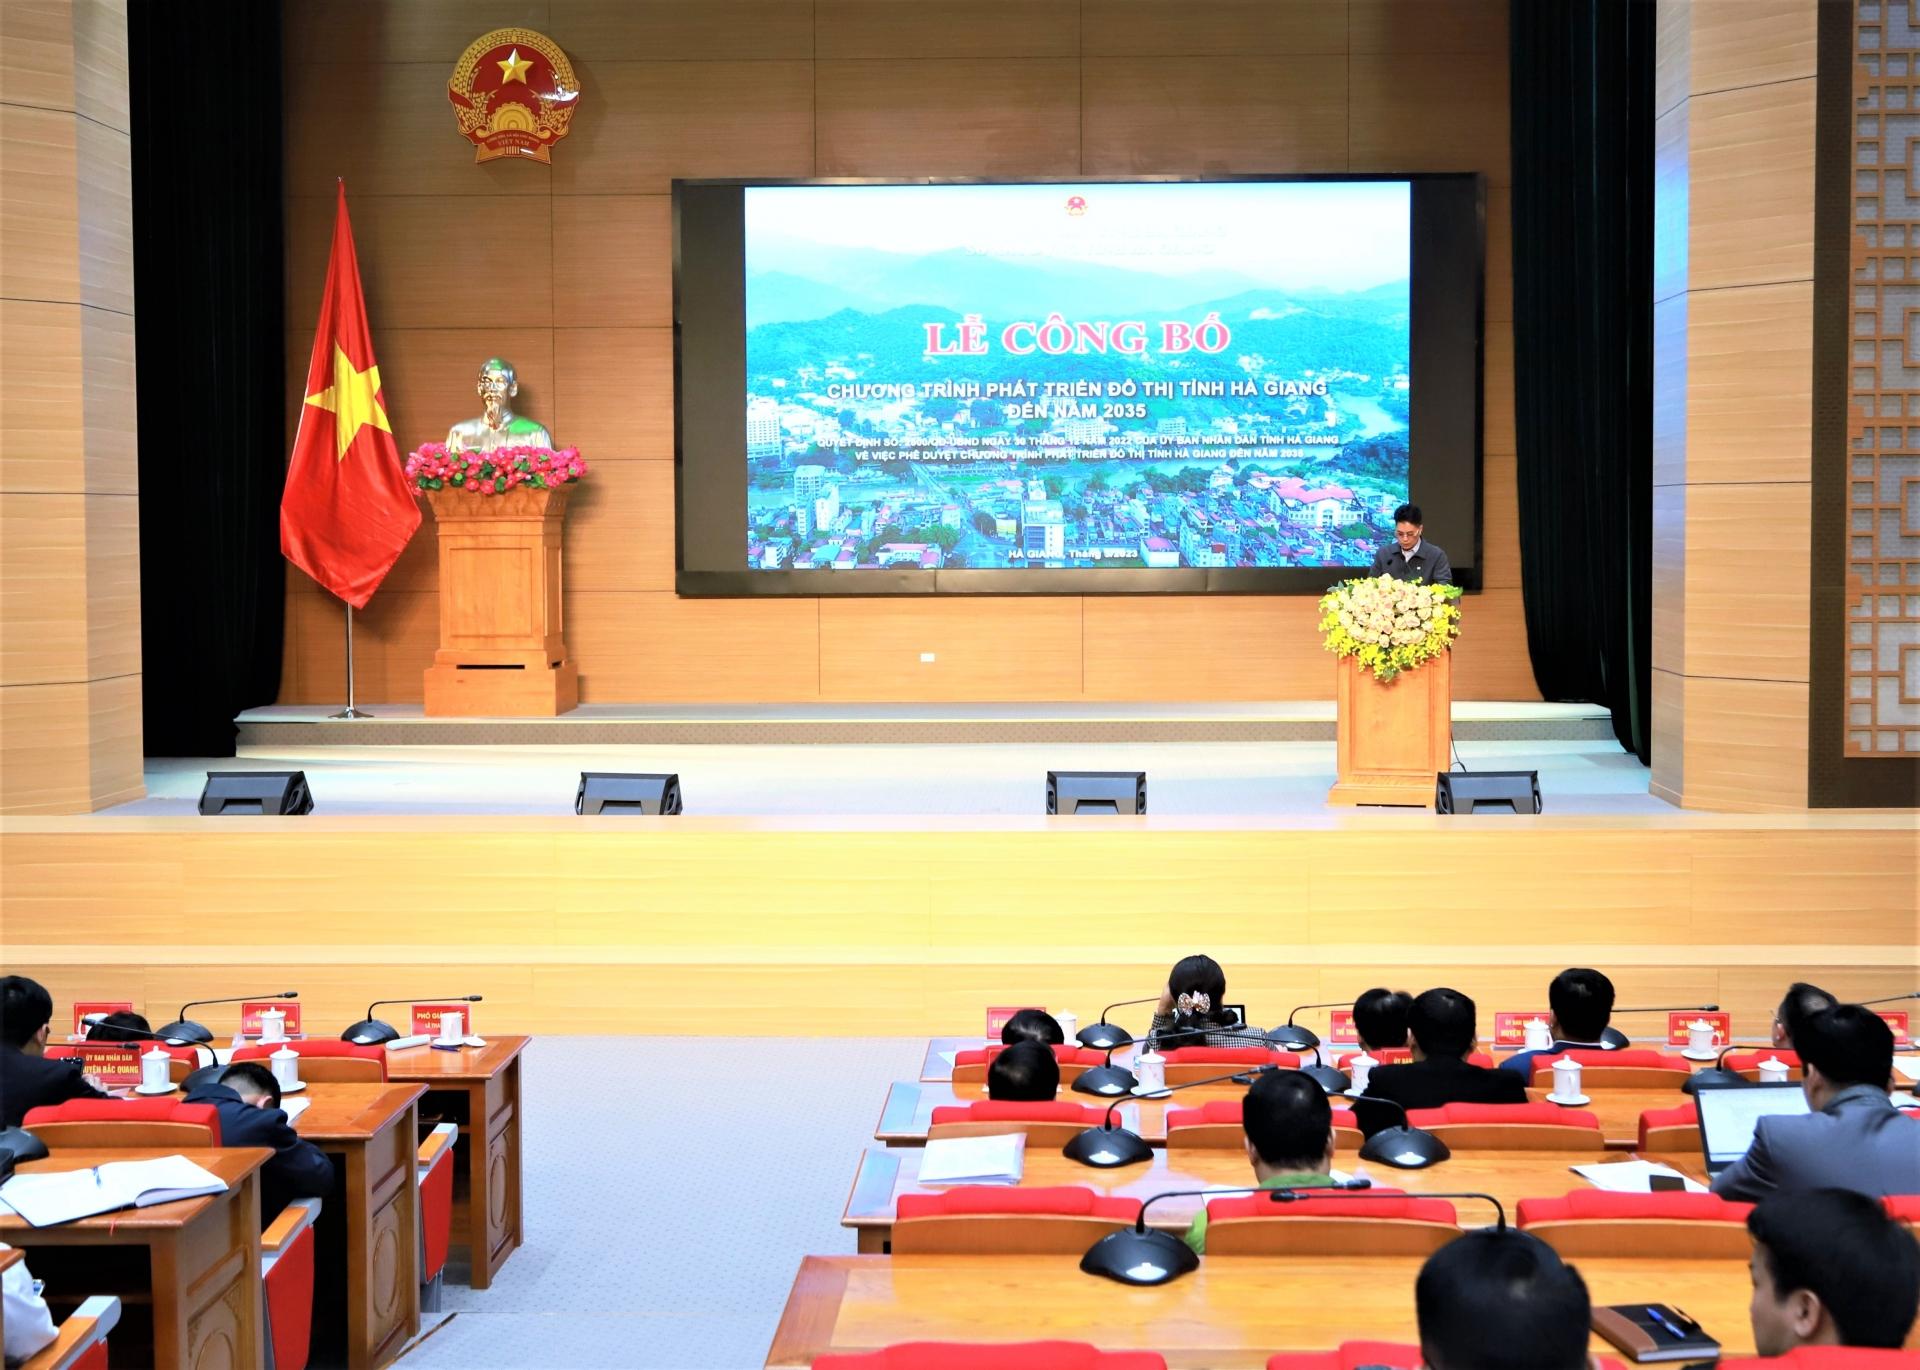 Lãnh đạo Sở Xây dựng công bố Quyết định của UBND tỉnh về việc phê duyệt Chương trình phát triển đô thị tỉnh Hà Giang đến năm 2035.